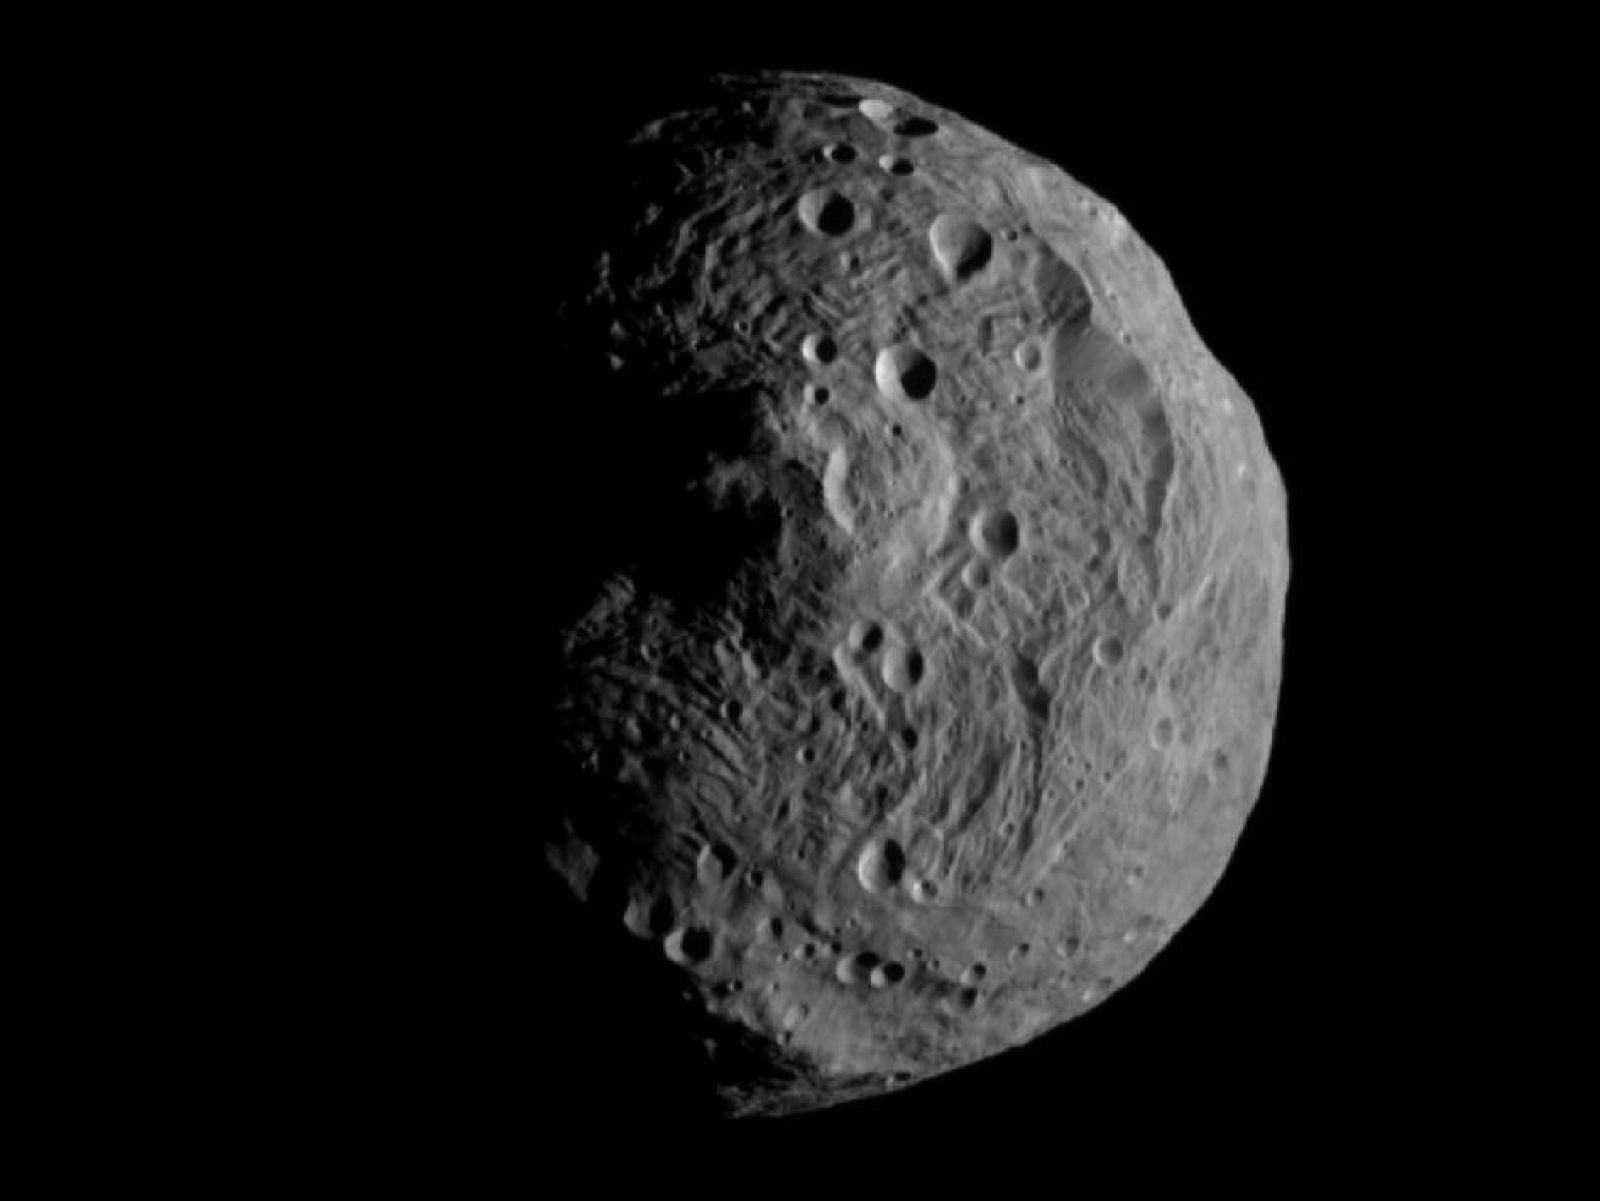 Imagen obtenida por la sonda Dawin al situarse a unos 16.000 kilómetros de Vesta